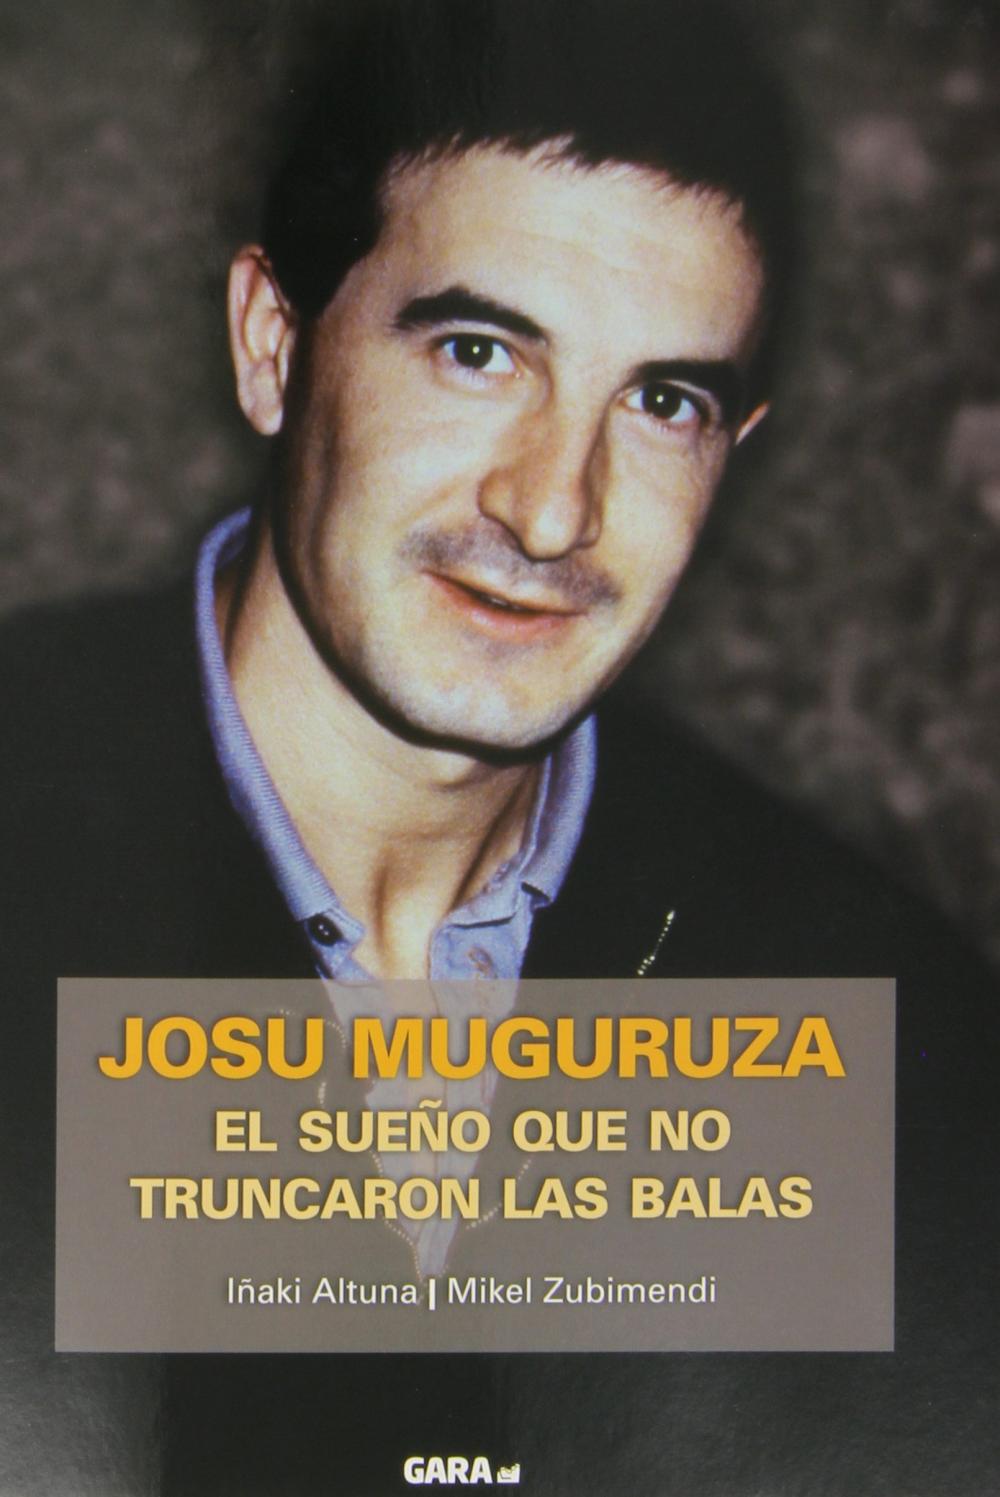 JOSU MUGURUZA. EL SUEÑO QUE NO TRUNCARON LAS BALAS